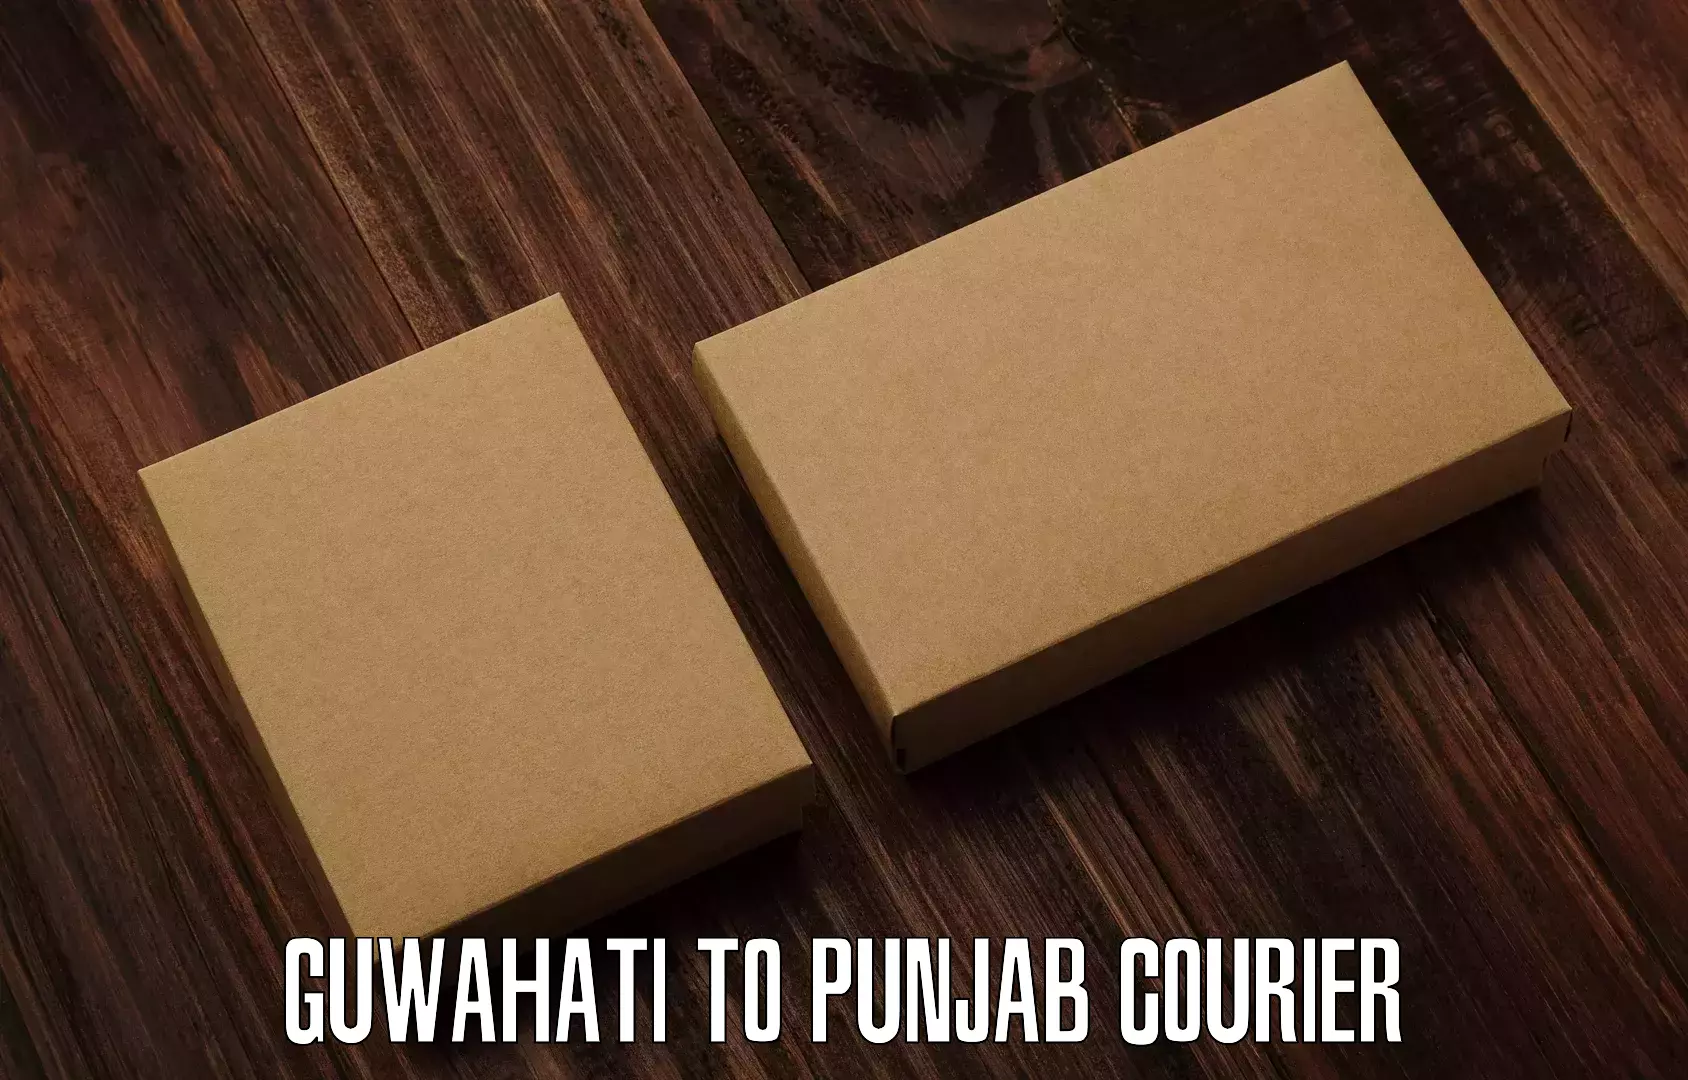 Express package handling Guwahati to Punjab